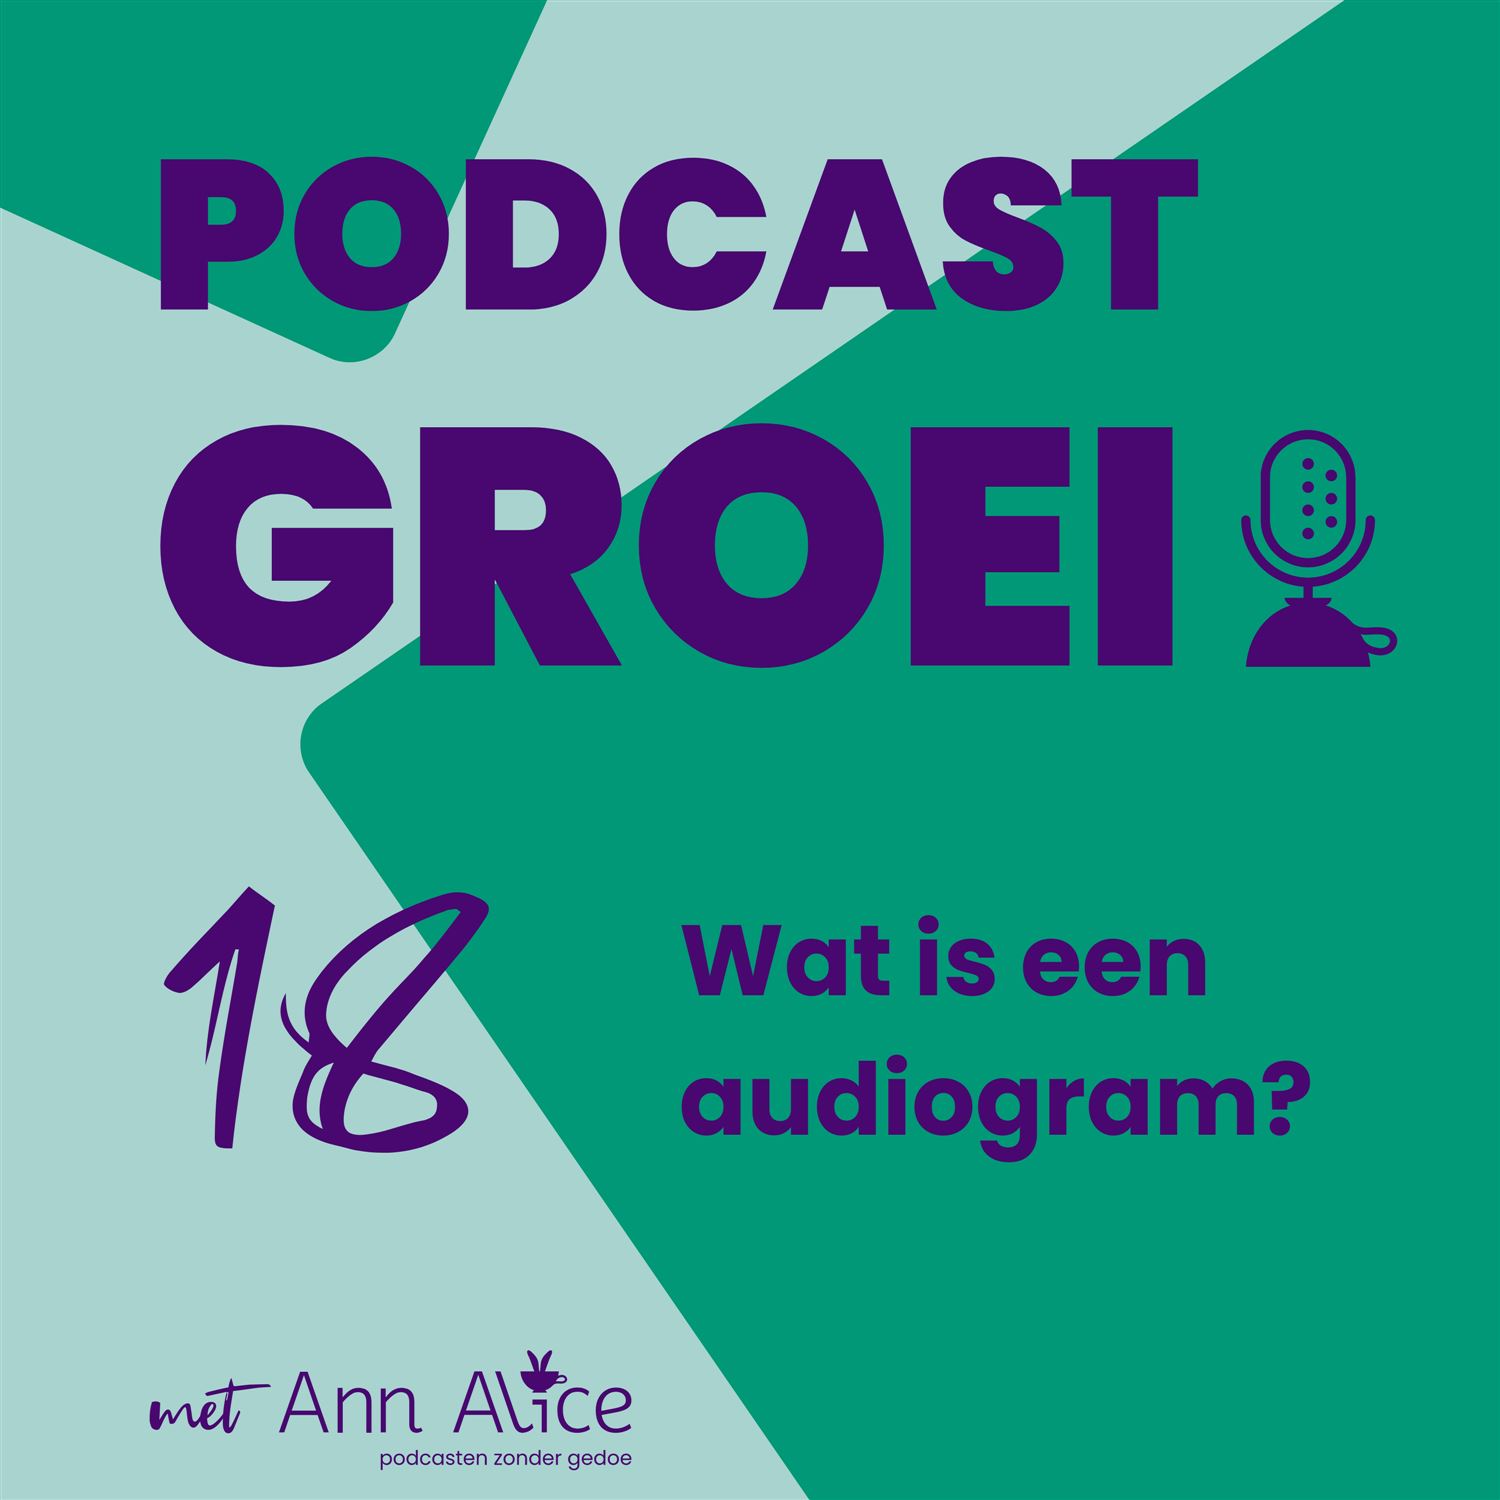 18. Wat is een audiogram? En hoe zet je het in voor podcast groei?